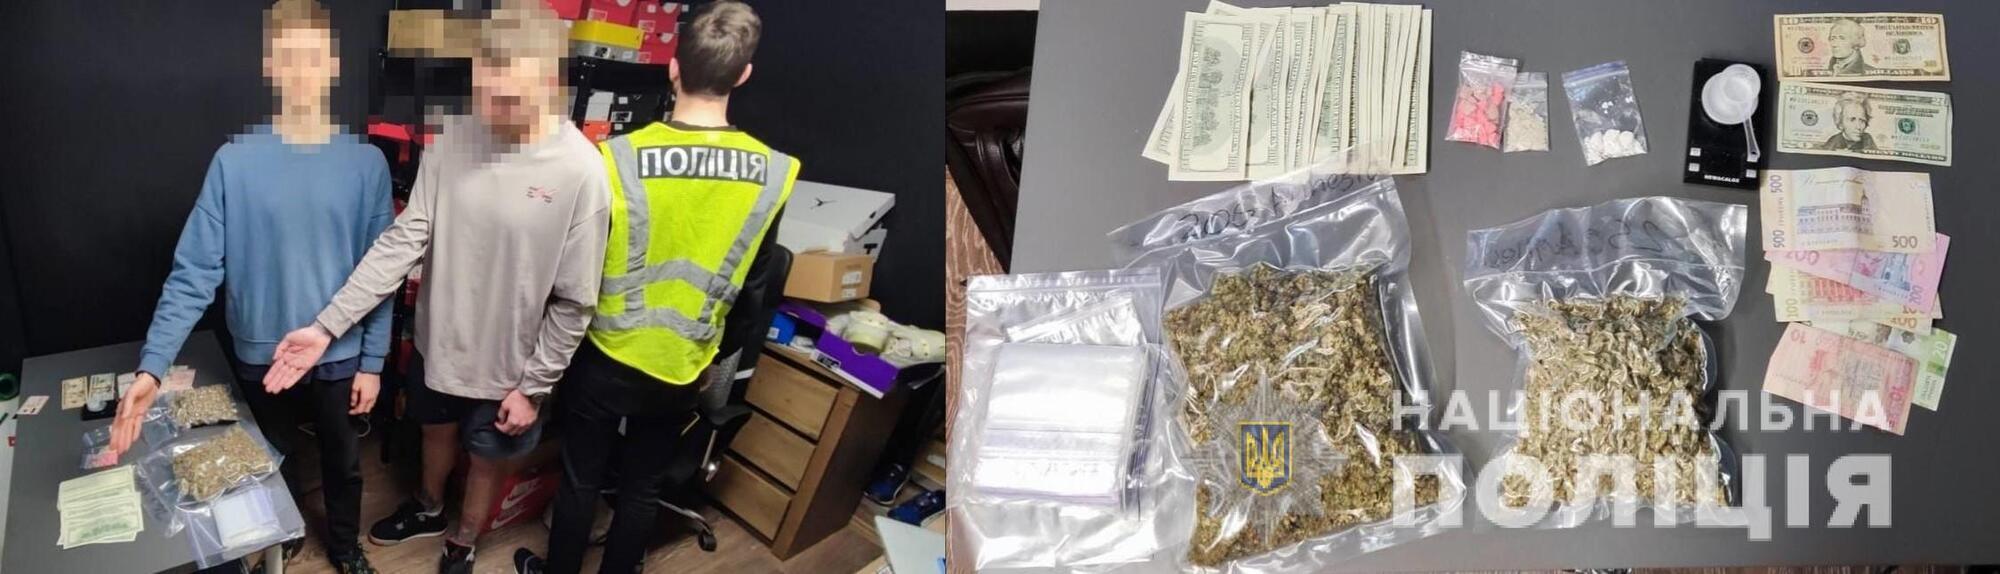 У зловмисників знайшли наркотики на півмільйона гривень.